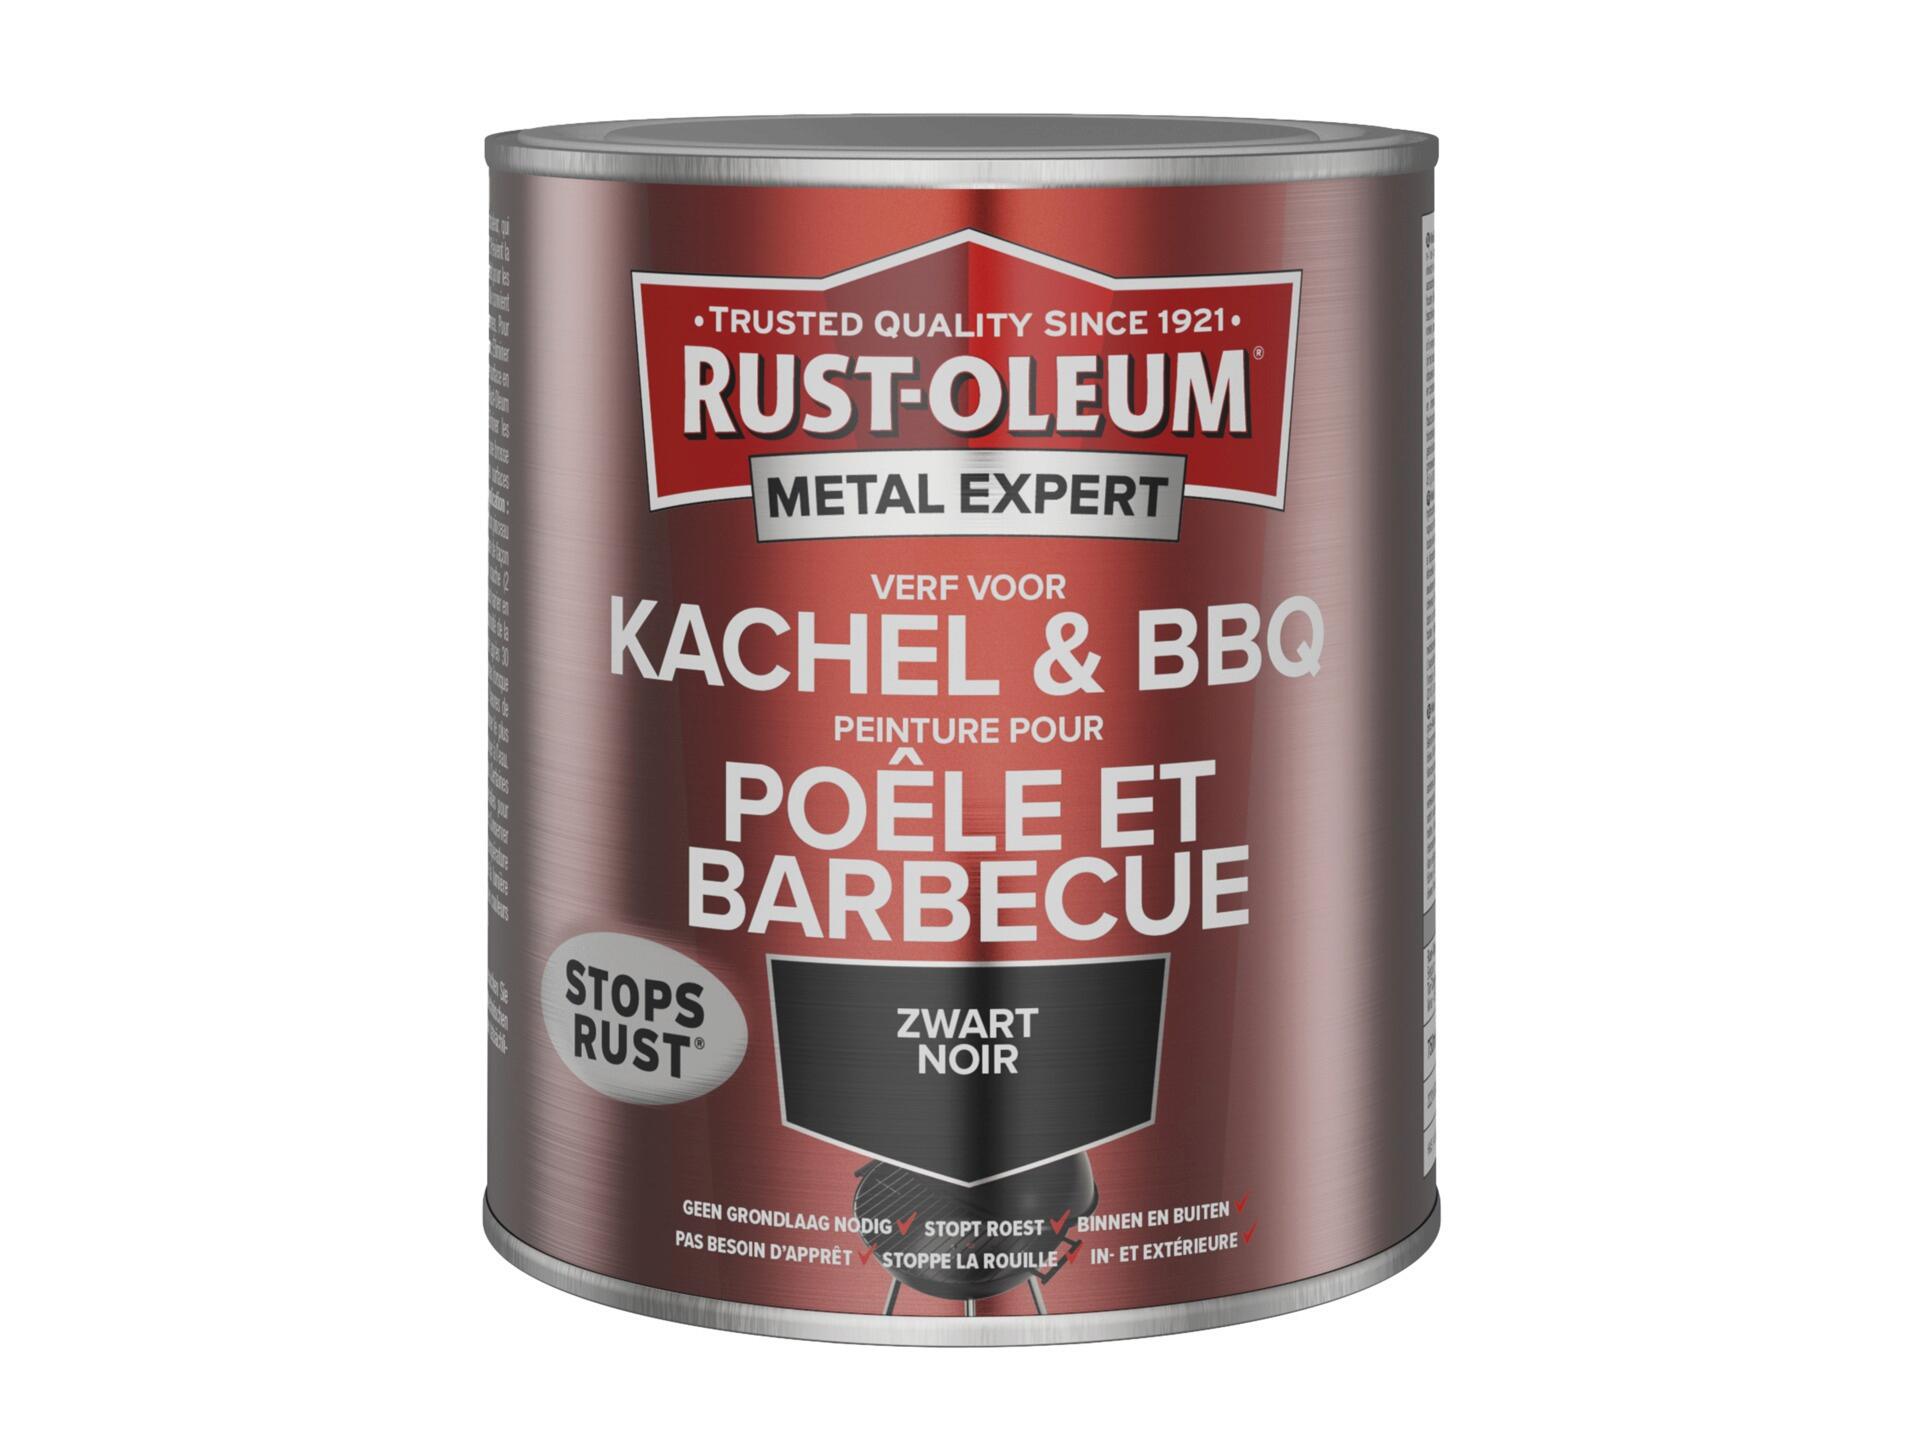 Rust-oleum Metal Expert peinture poêle et barbecue 750ml noir